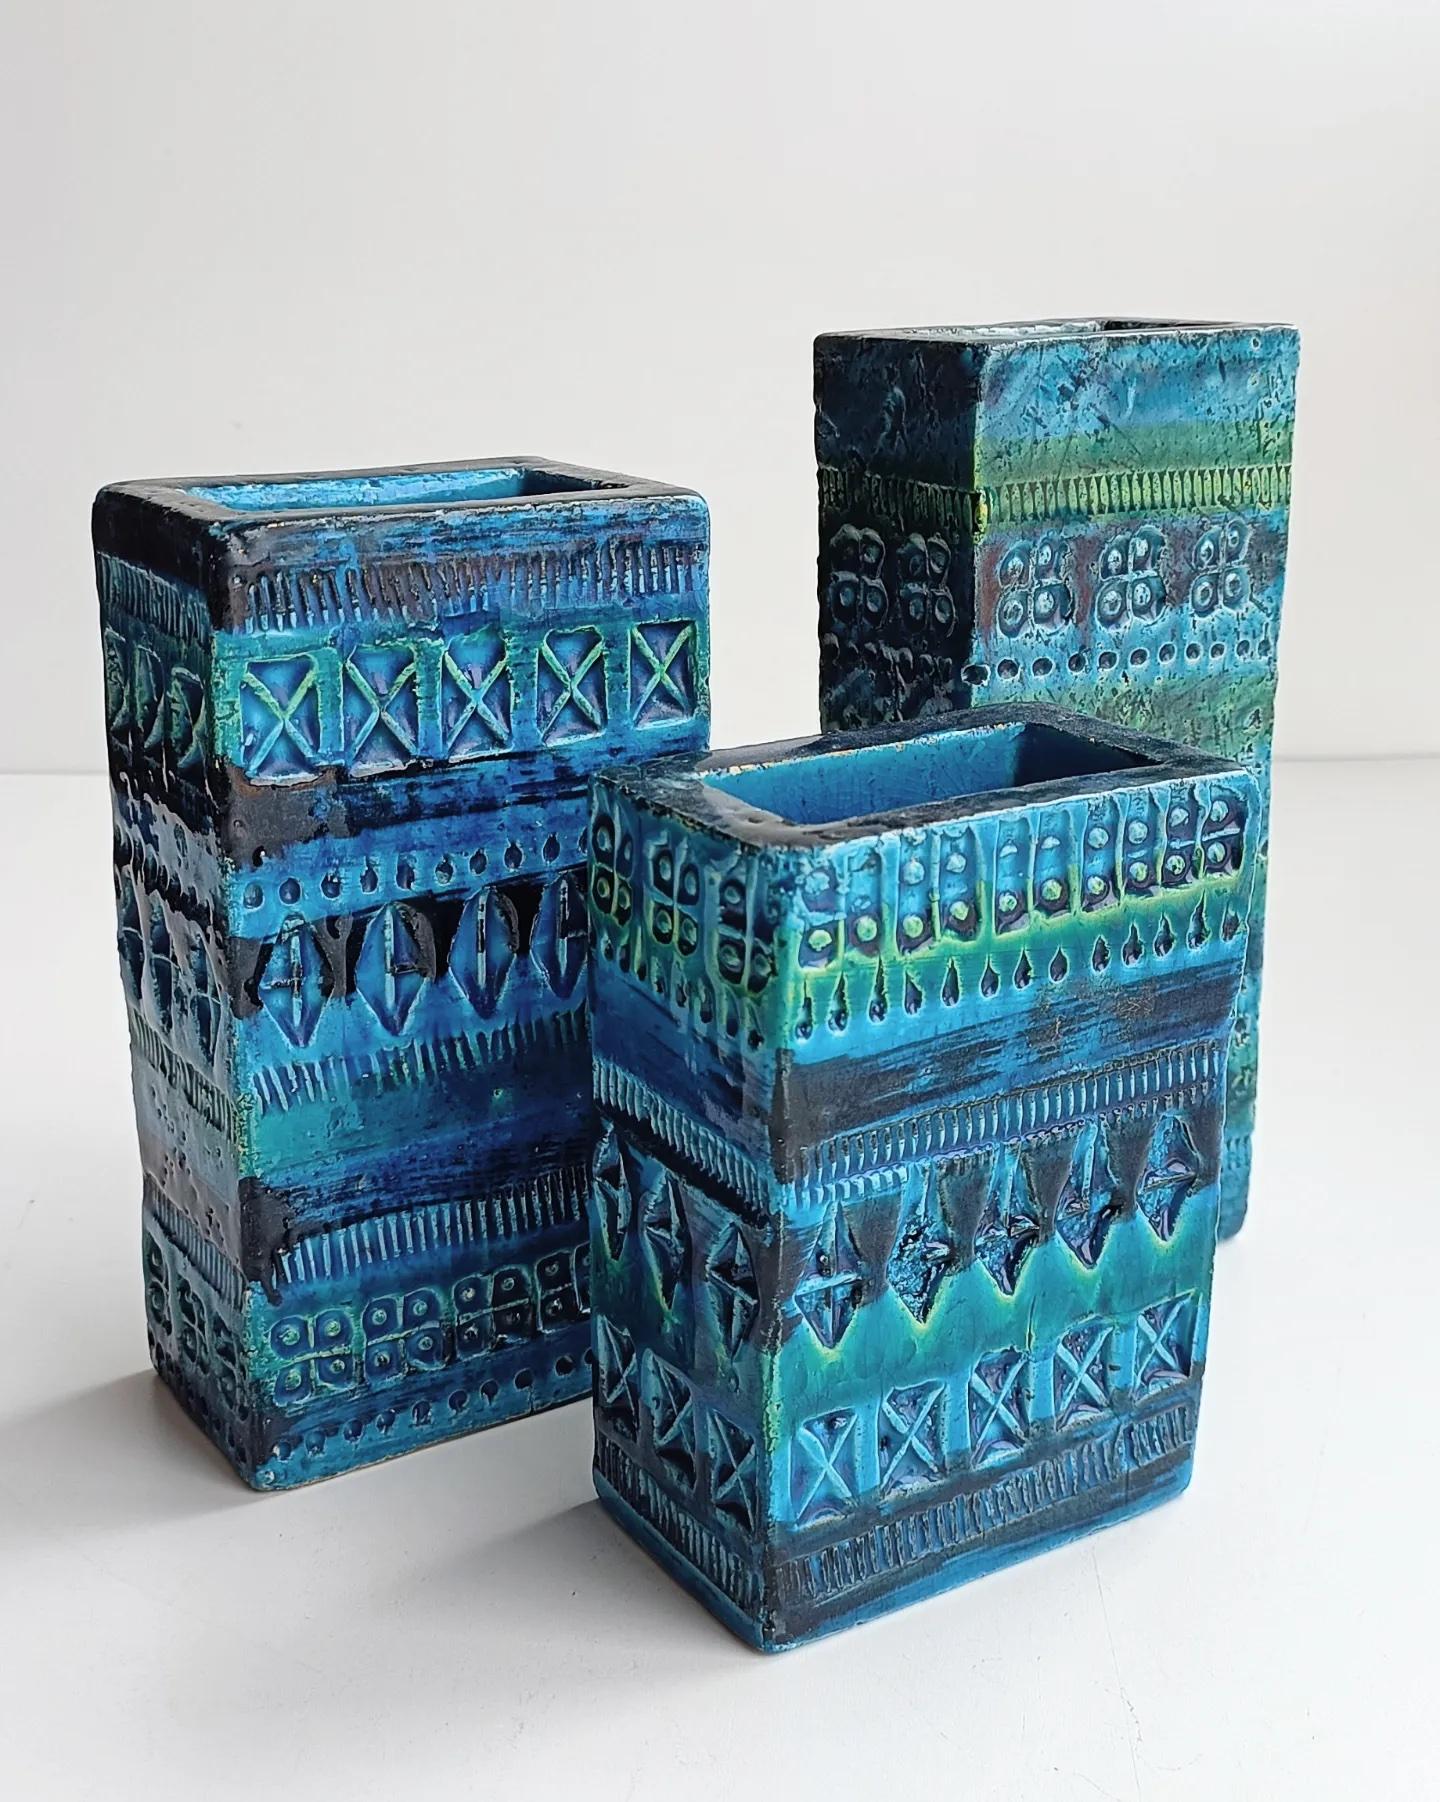 Ensemble de trois vases en céramique en forme de brique de la ligne iconique Rimini Blu d'Aldo Londi pour Bitossi Ceramiche. Fabriqué à la main à Flavia Montelupo, Italie, vers les années 1960. 

Tous trois portent la marque distinctive de